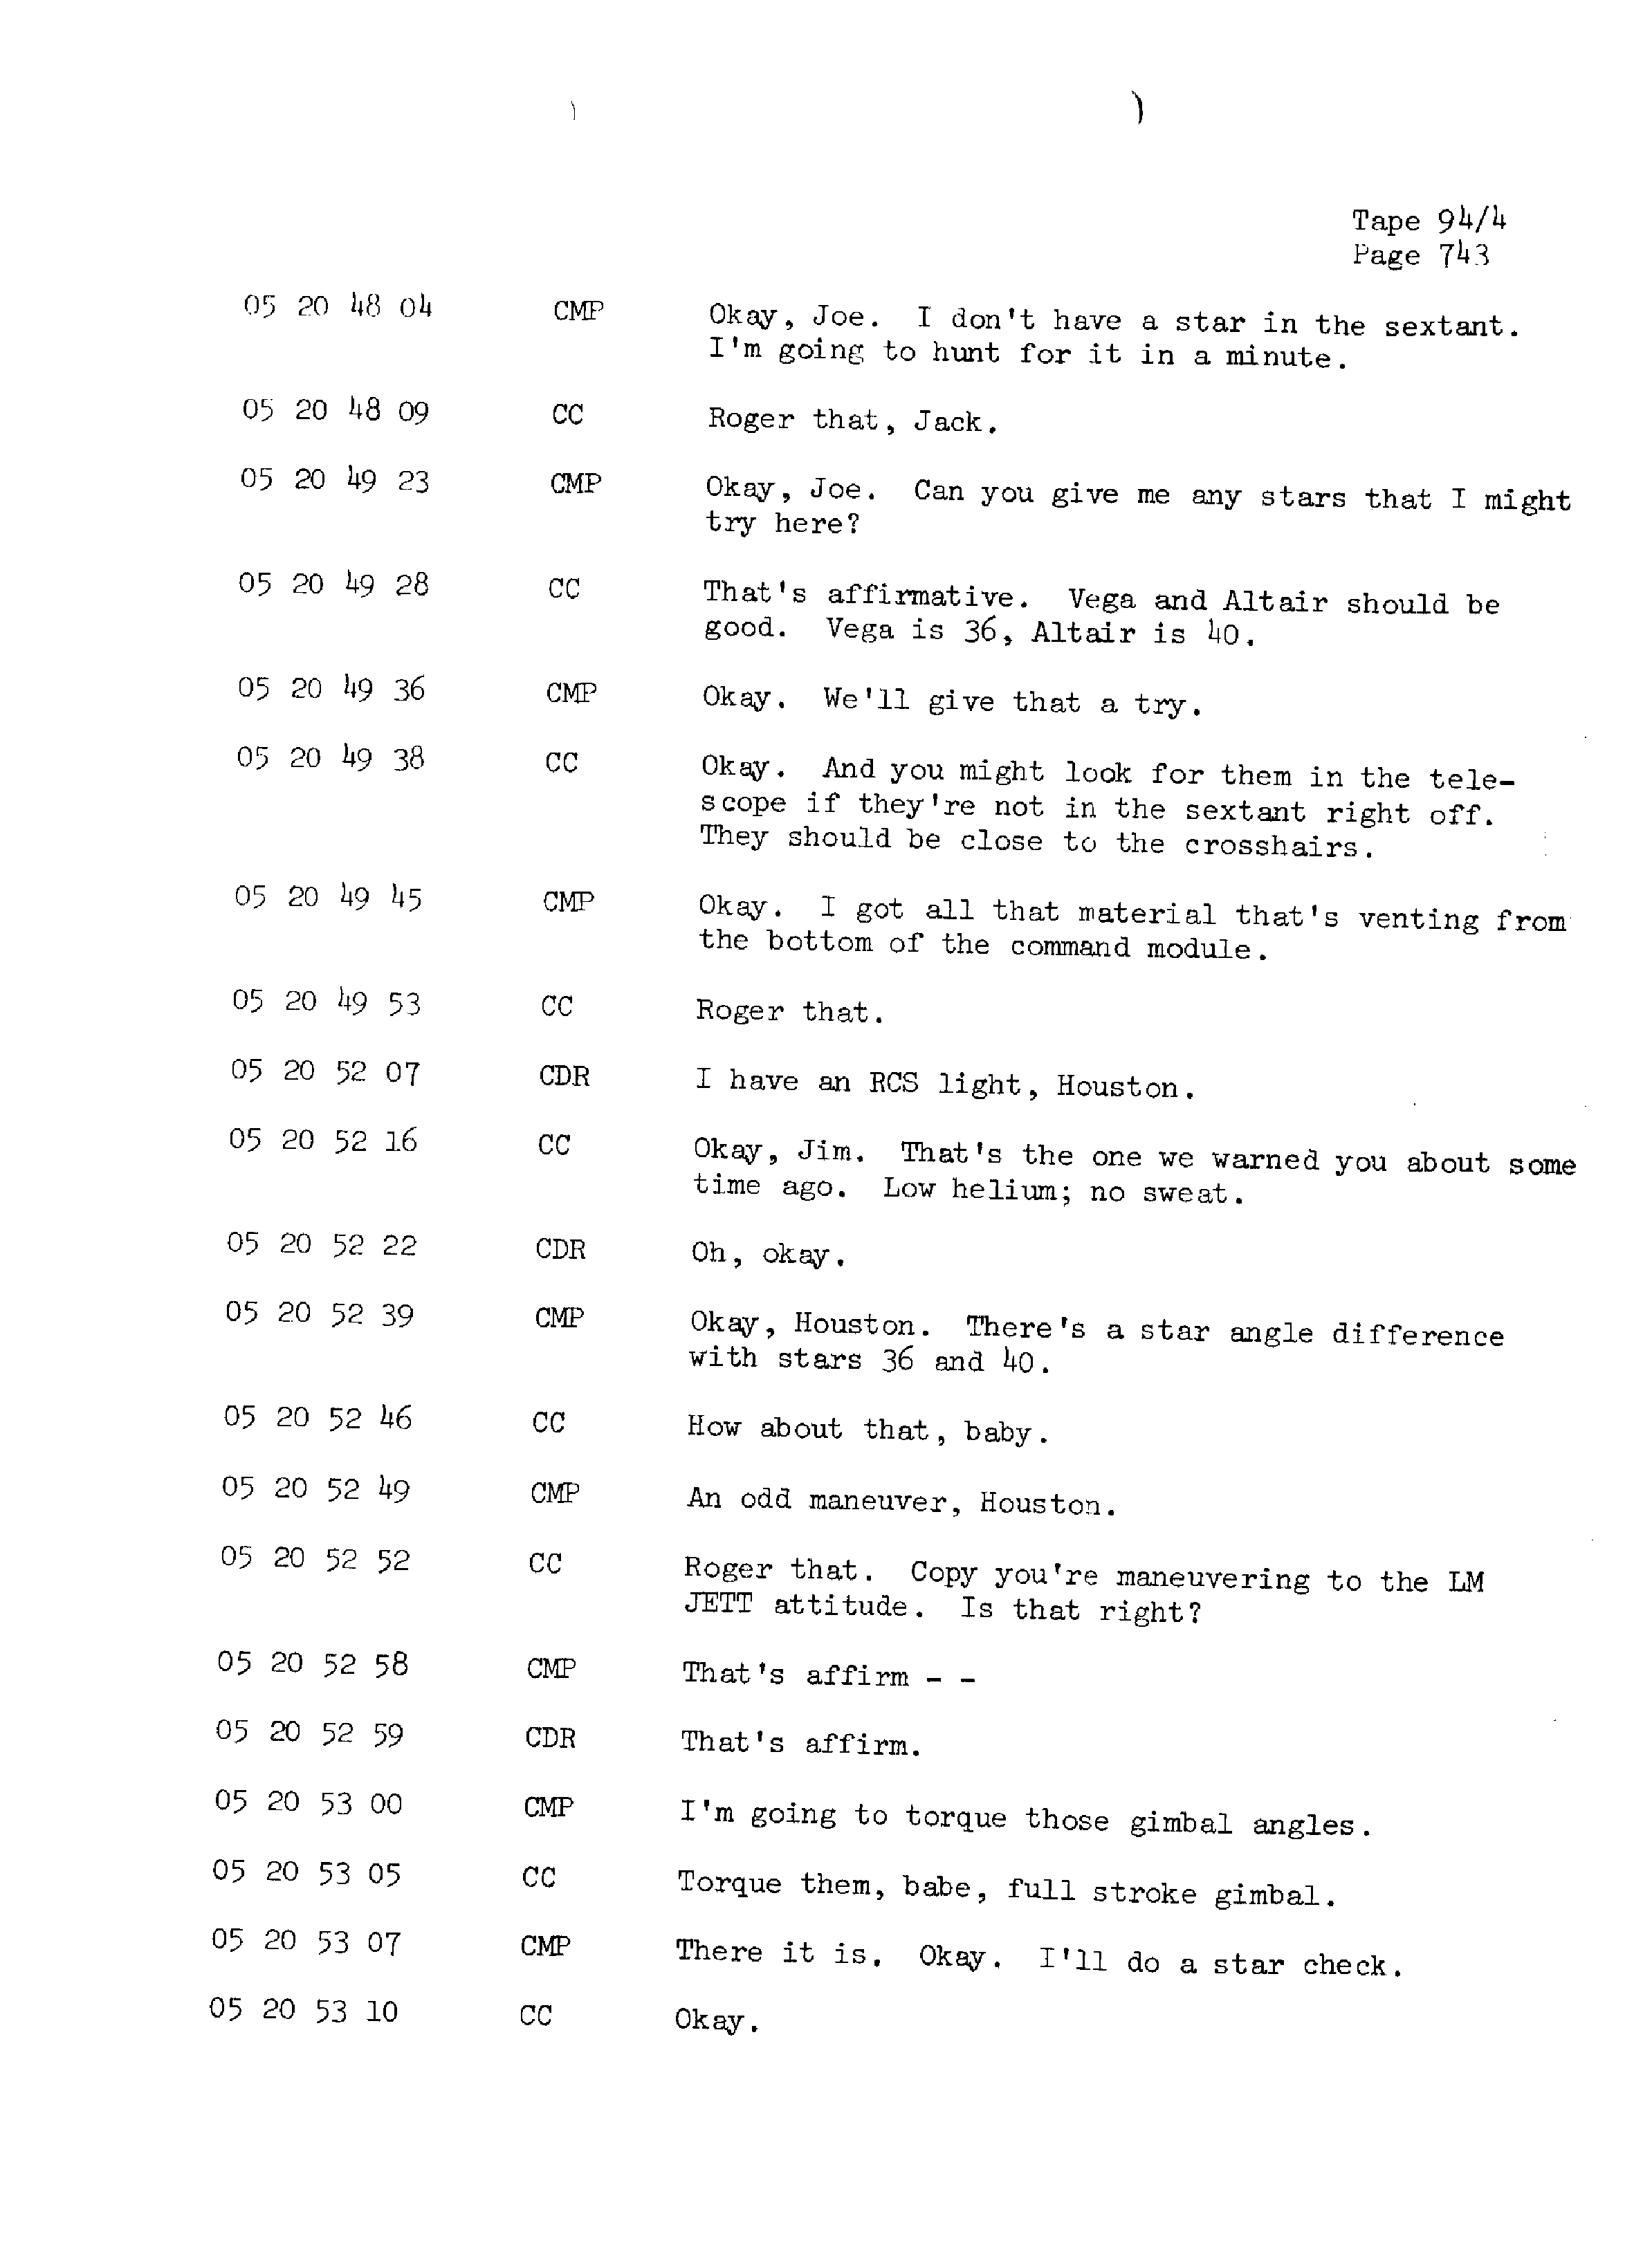 Page 750 of Apollo 13’s original transcript